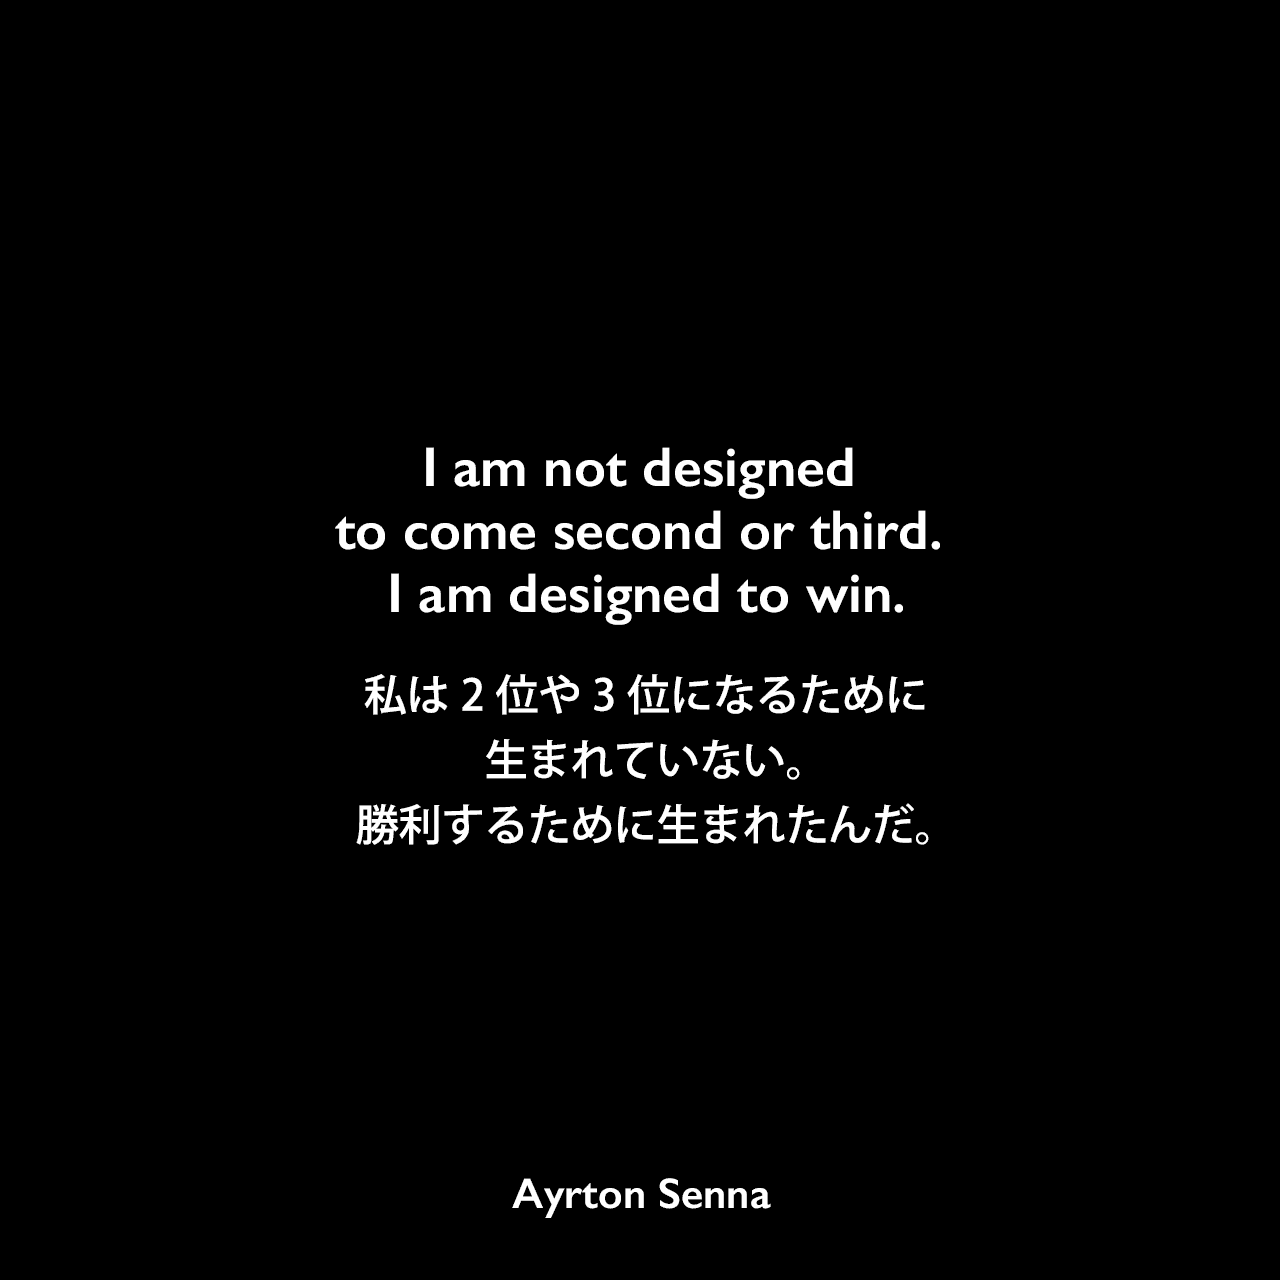 I am not designed to come second or third. I am designed to win.私は2位や3位になるために作られていない。勝利するために作られているんだ。Ayrton Senna